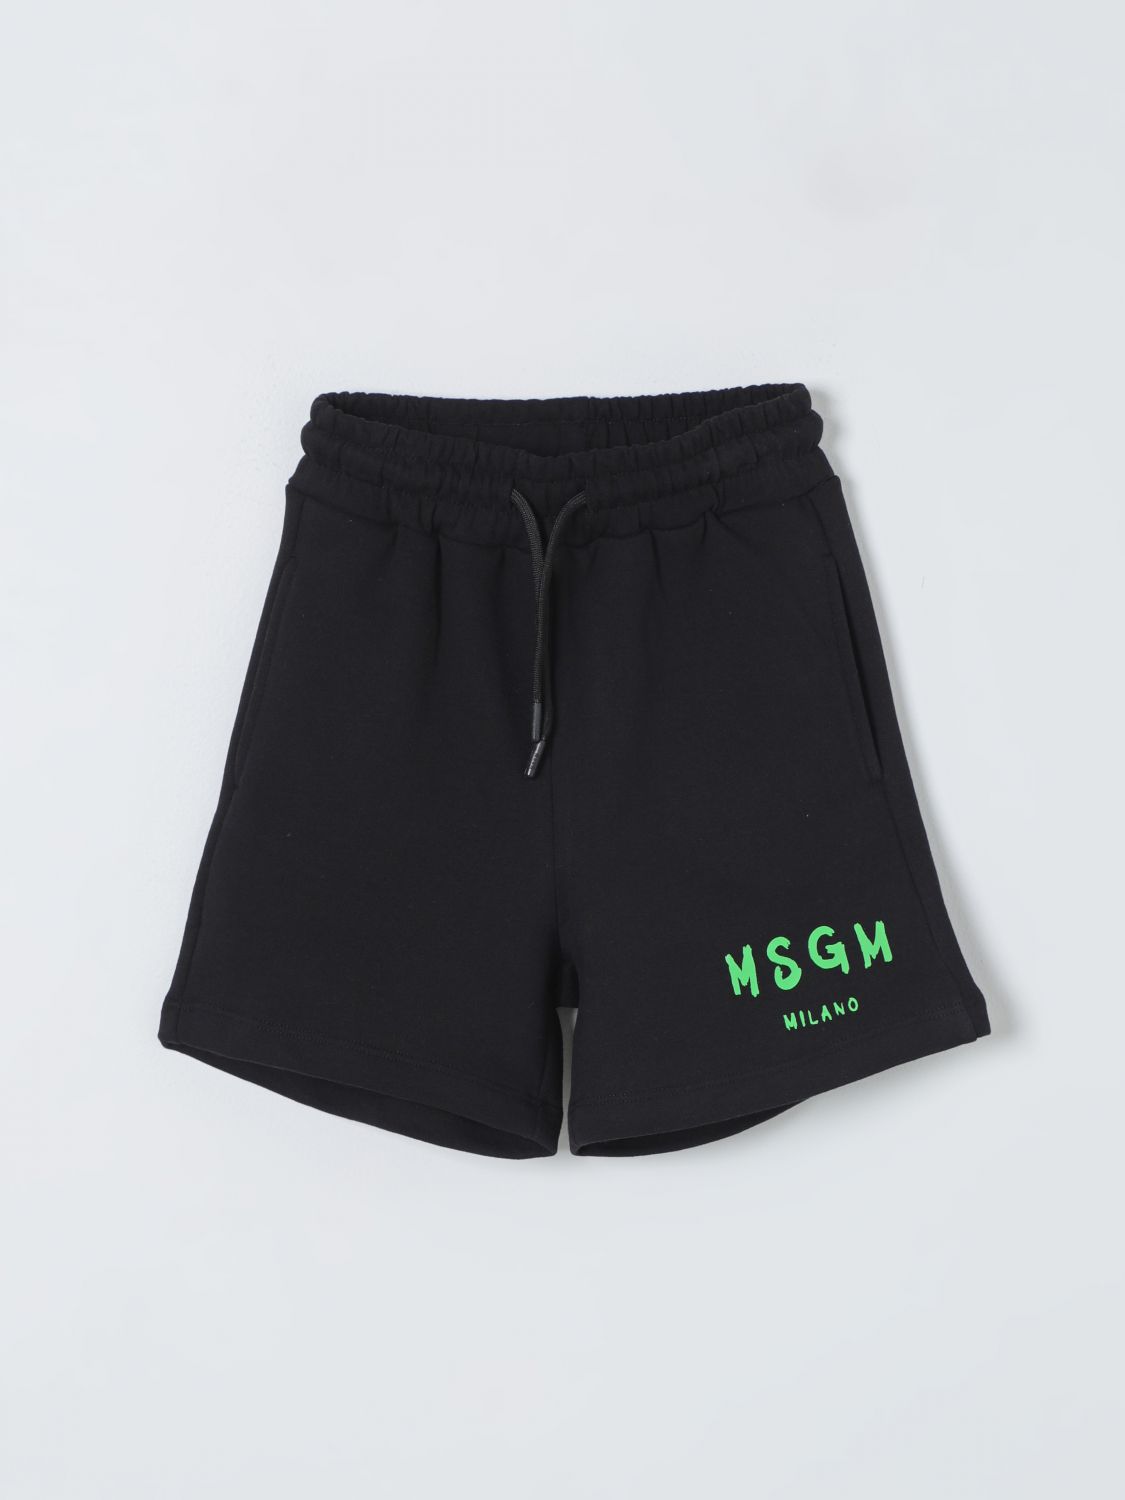 Msgm Shorts  Kids Kids Colour Black